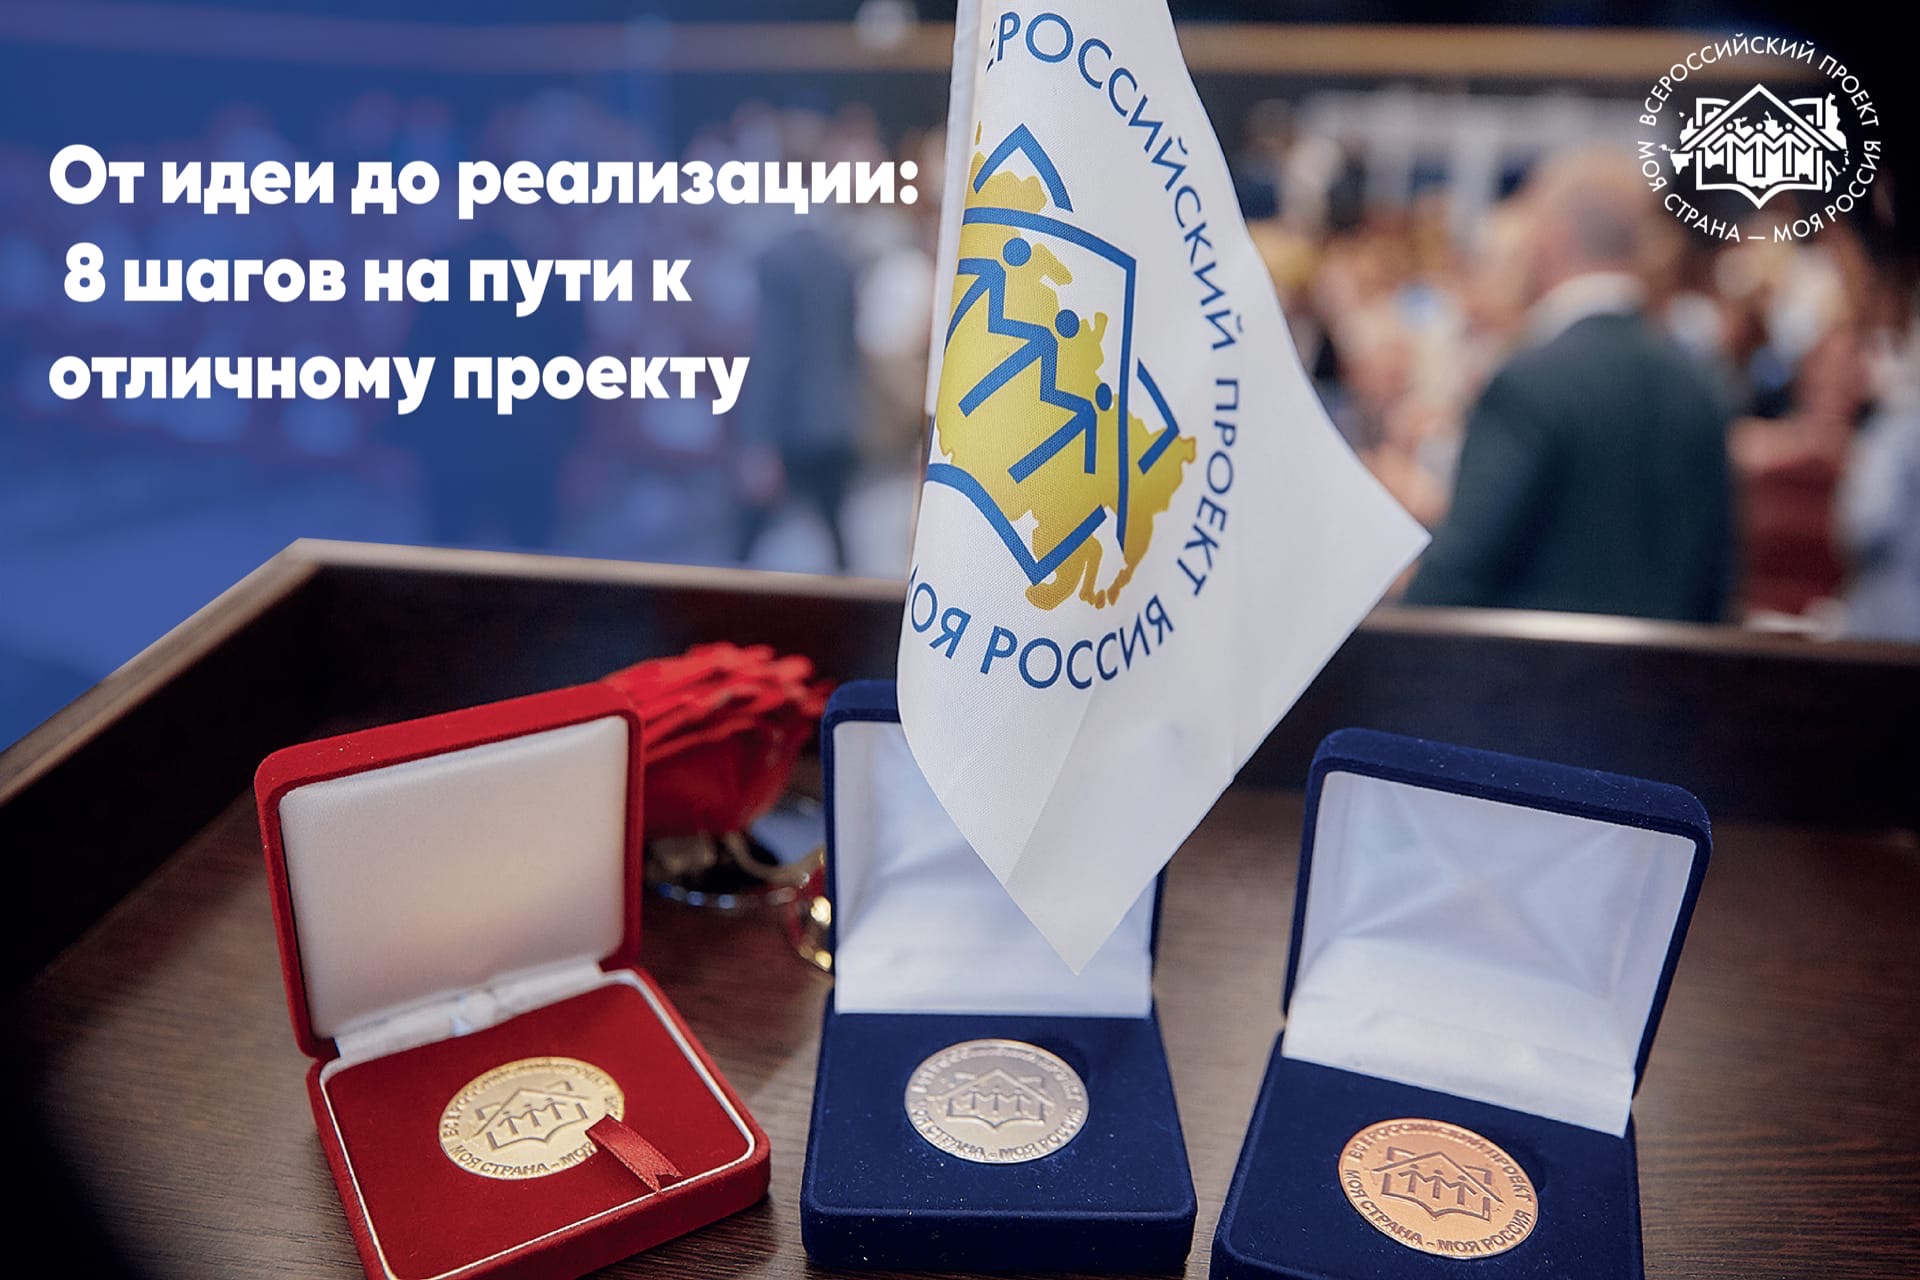 Прямо сейчас победители Всероссийского конкурса «Моя страна - моя Россия» модернизируют сферу образования, медицины, градостроительства и энергетики, реализуя свои проекты по всей стране!✅